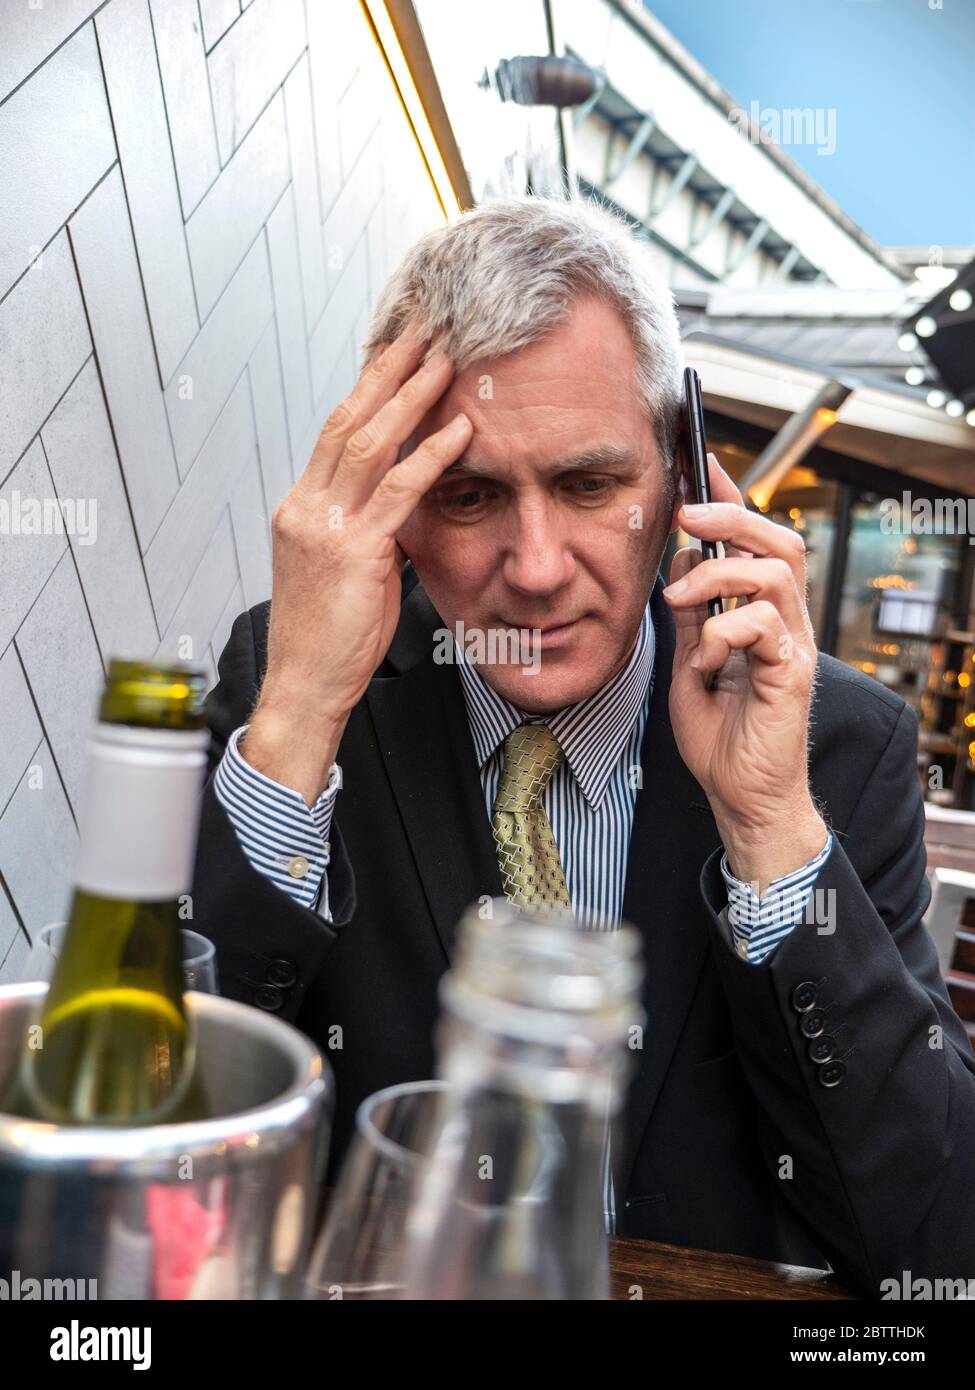 Uomo d'affari con bevande alcoliche sul tavolo che guarda preoccupato, cattive notizie, penoso, preoccupato, ascoltando sul suo smartphone iPhone cellulare Foto Stock